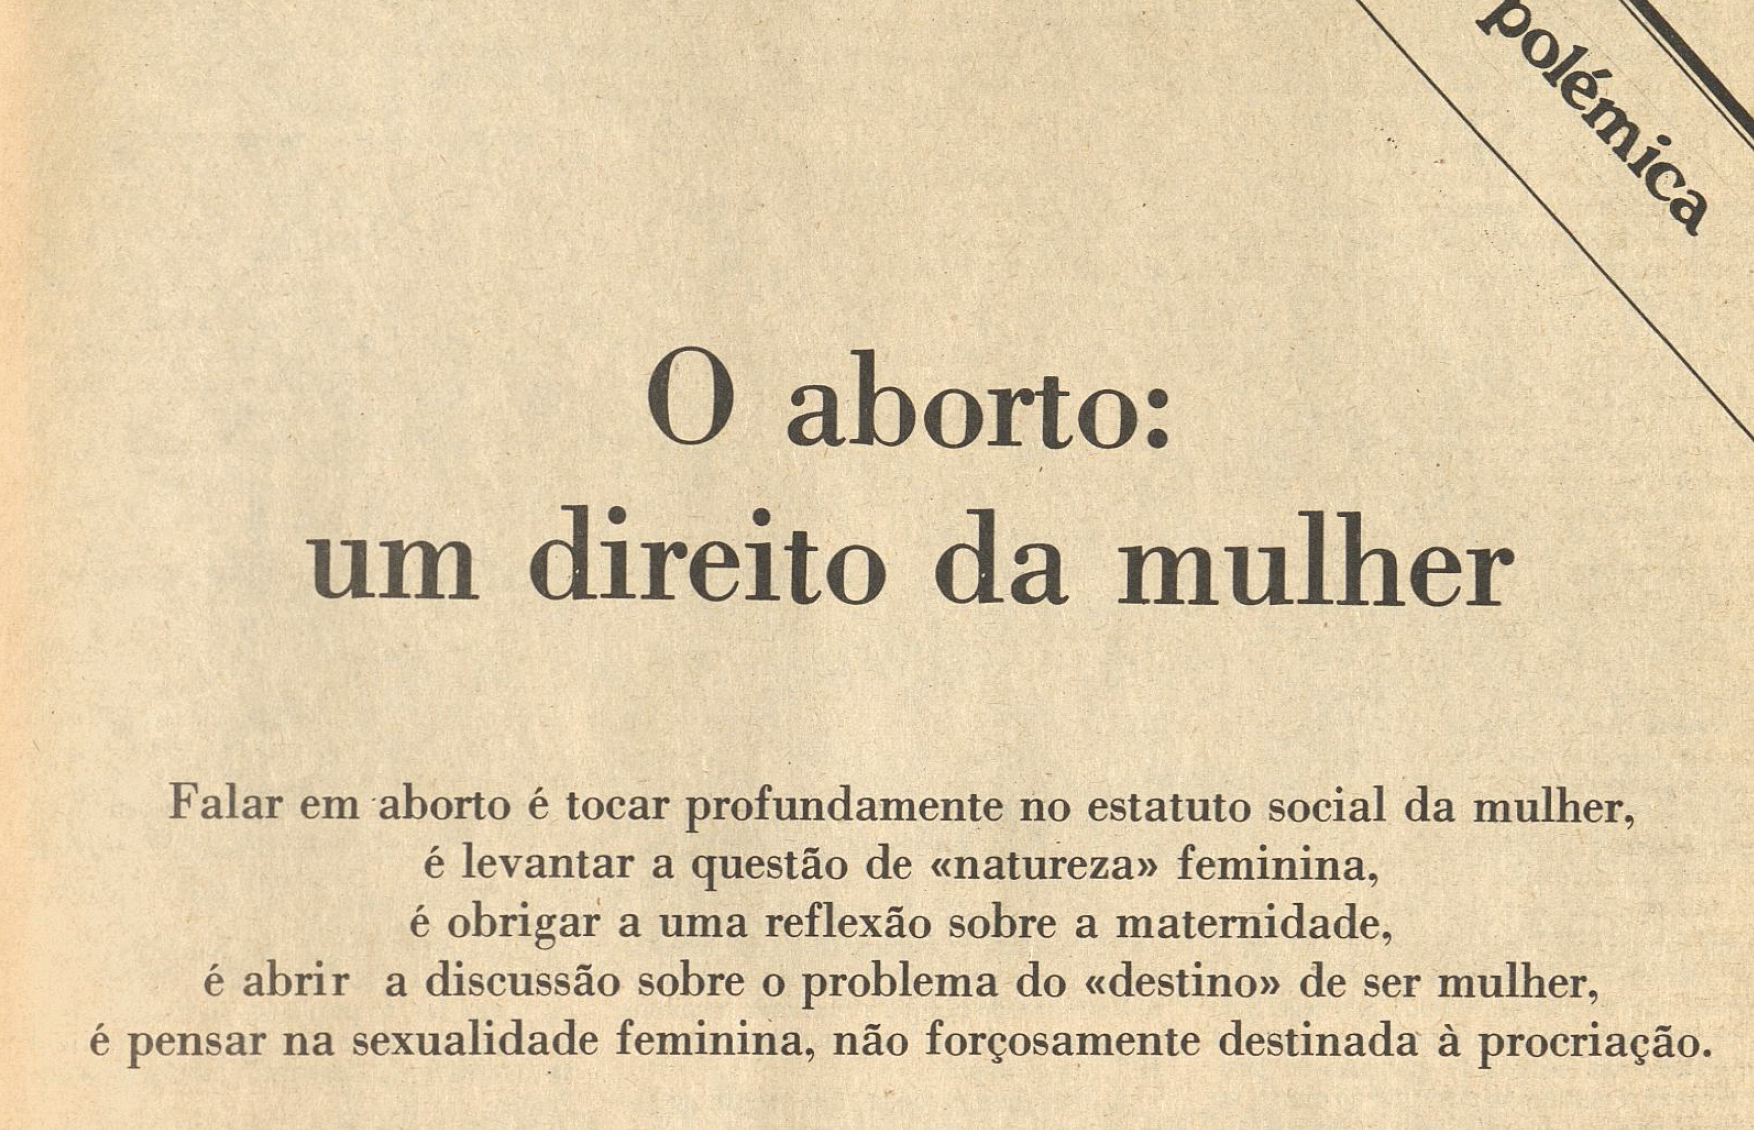 "O aborto: um direito da mulher"